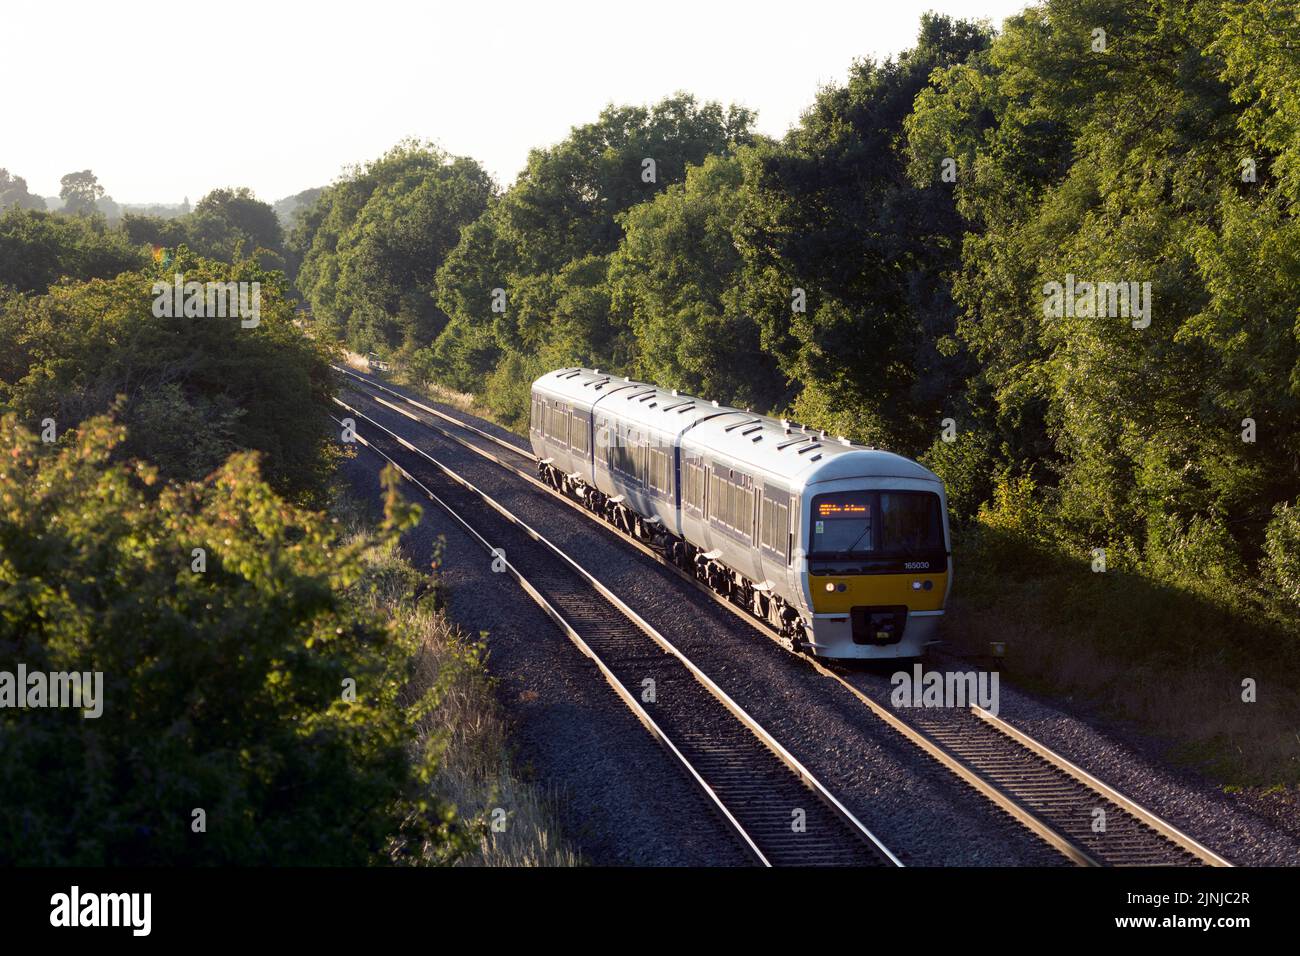 Tren diesel clase 165 de Chiltern Railways en una tarde de verano, Shrewley, Warwickshire, Reino Unido Foto de stock